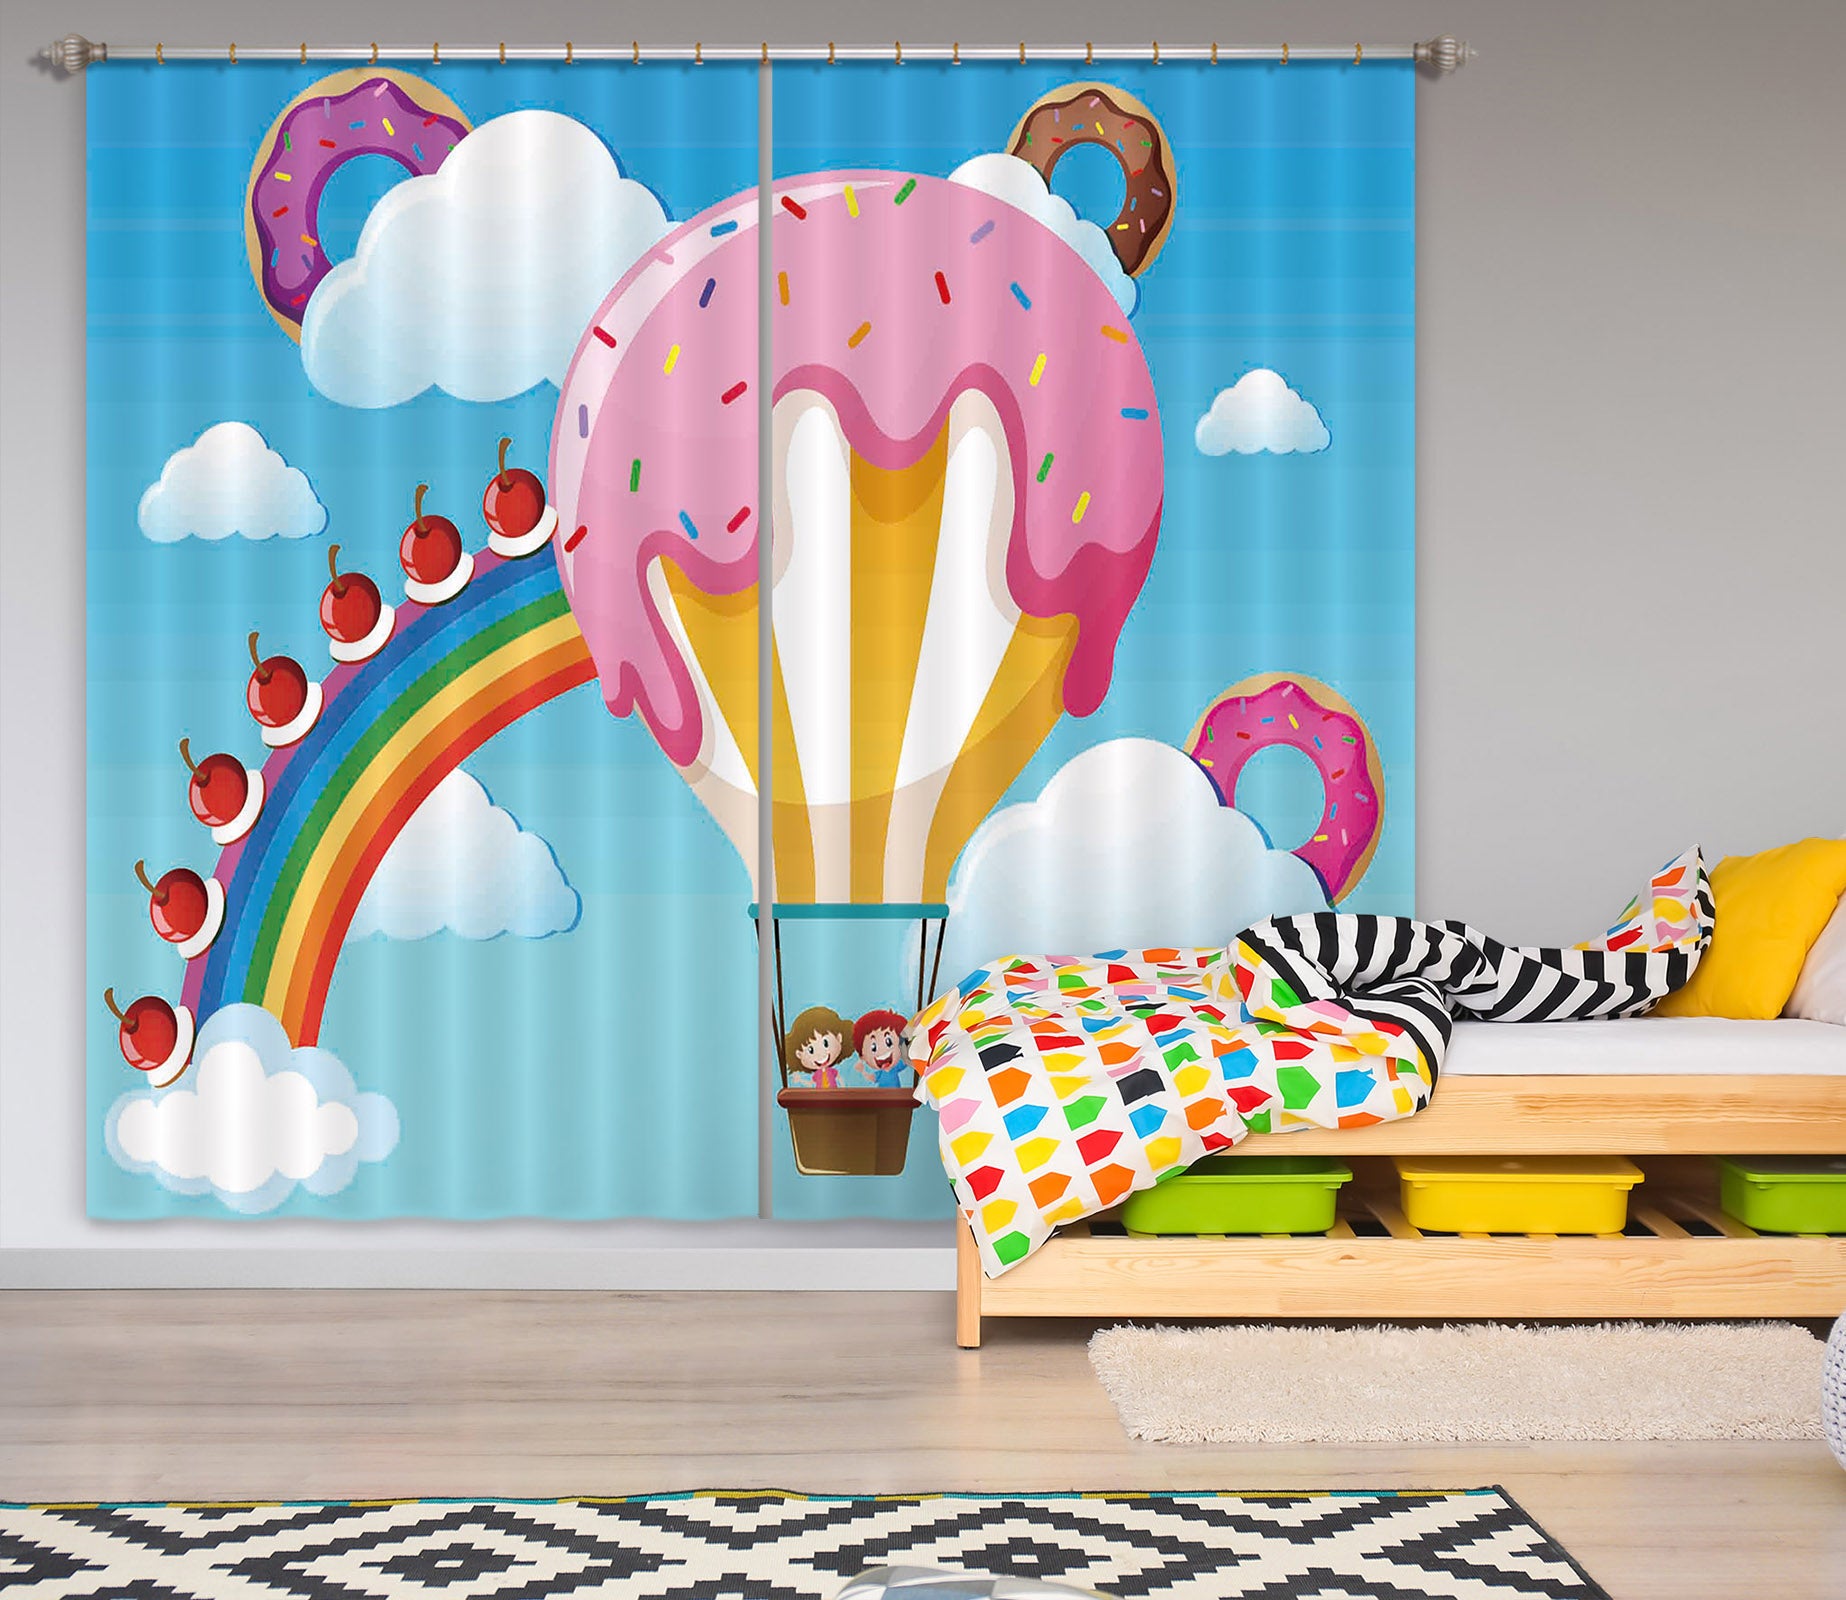 3D Hot Air Balloon 789 Curtains Drapes